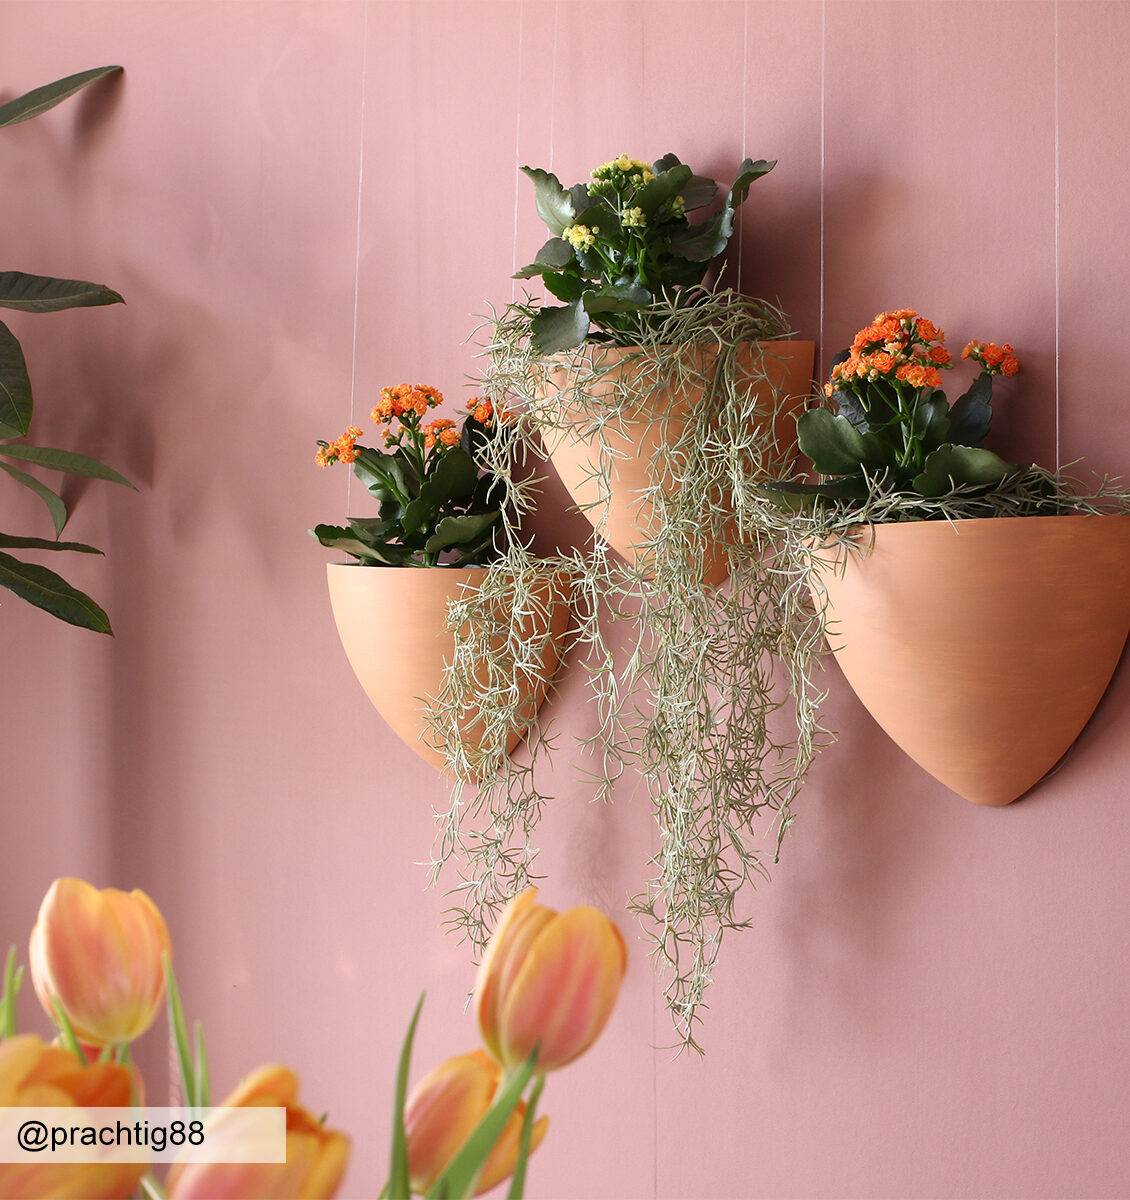 DE Botaniq hängender Blumentopf mit Pflanzen an einer rosa Wand